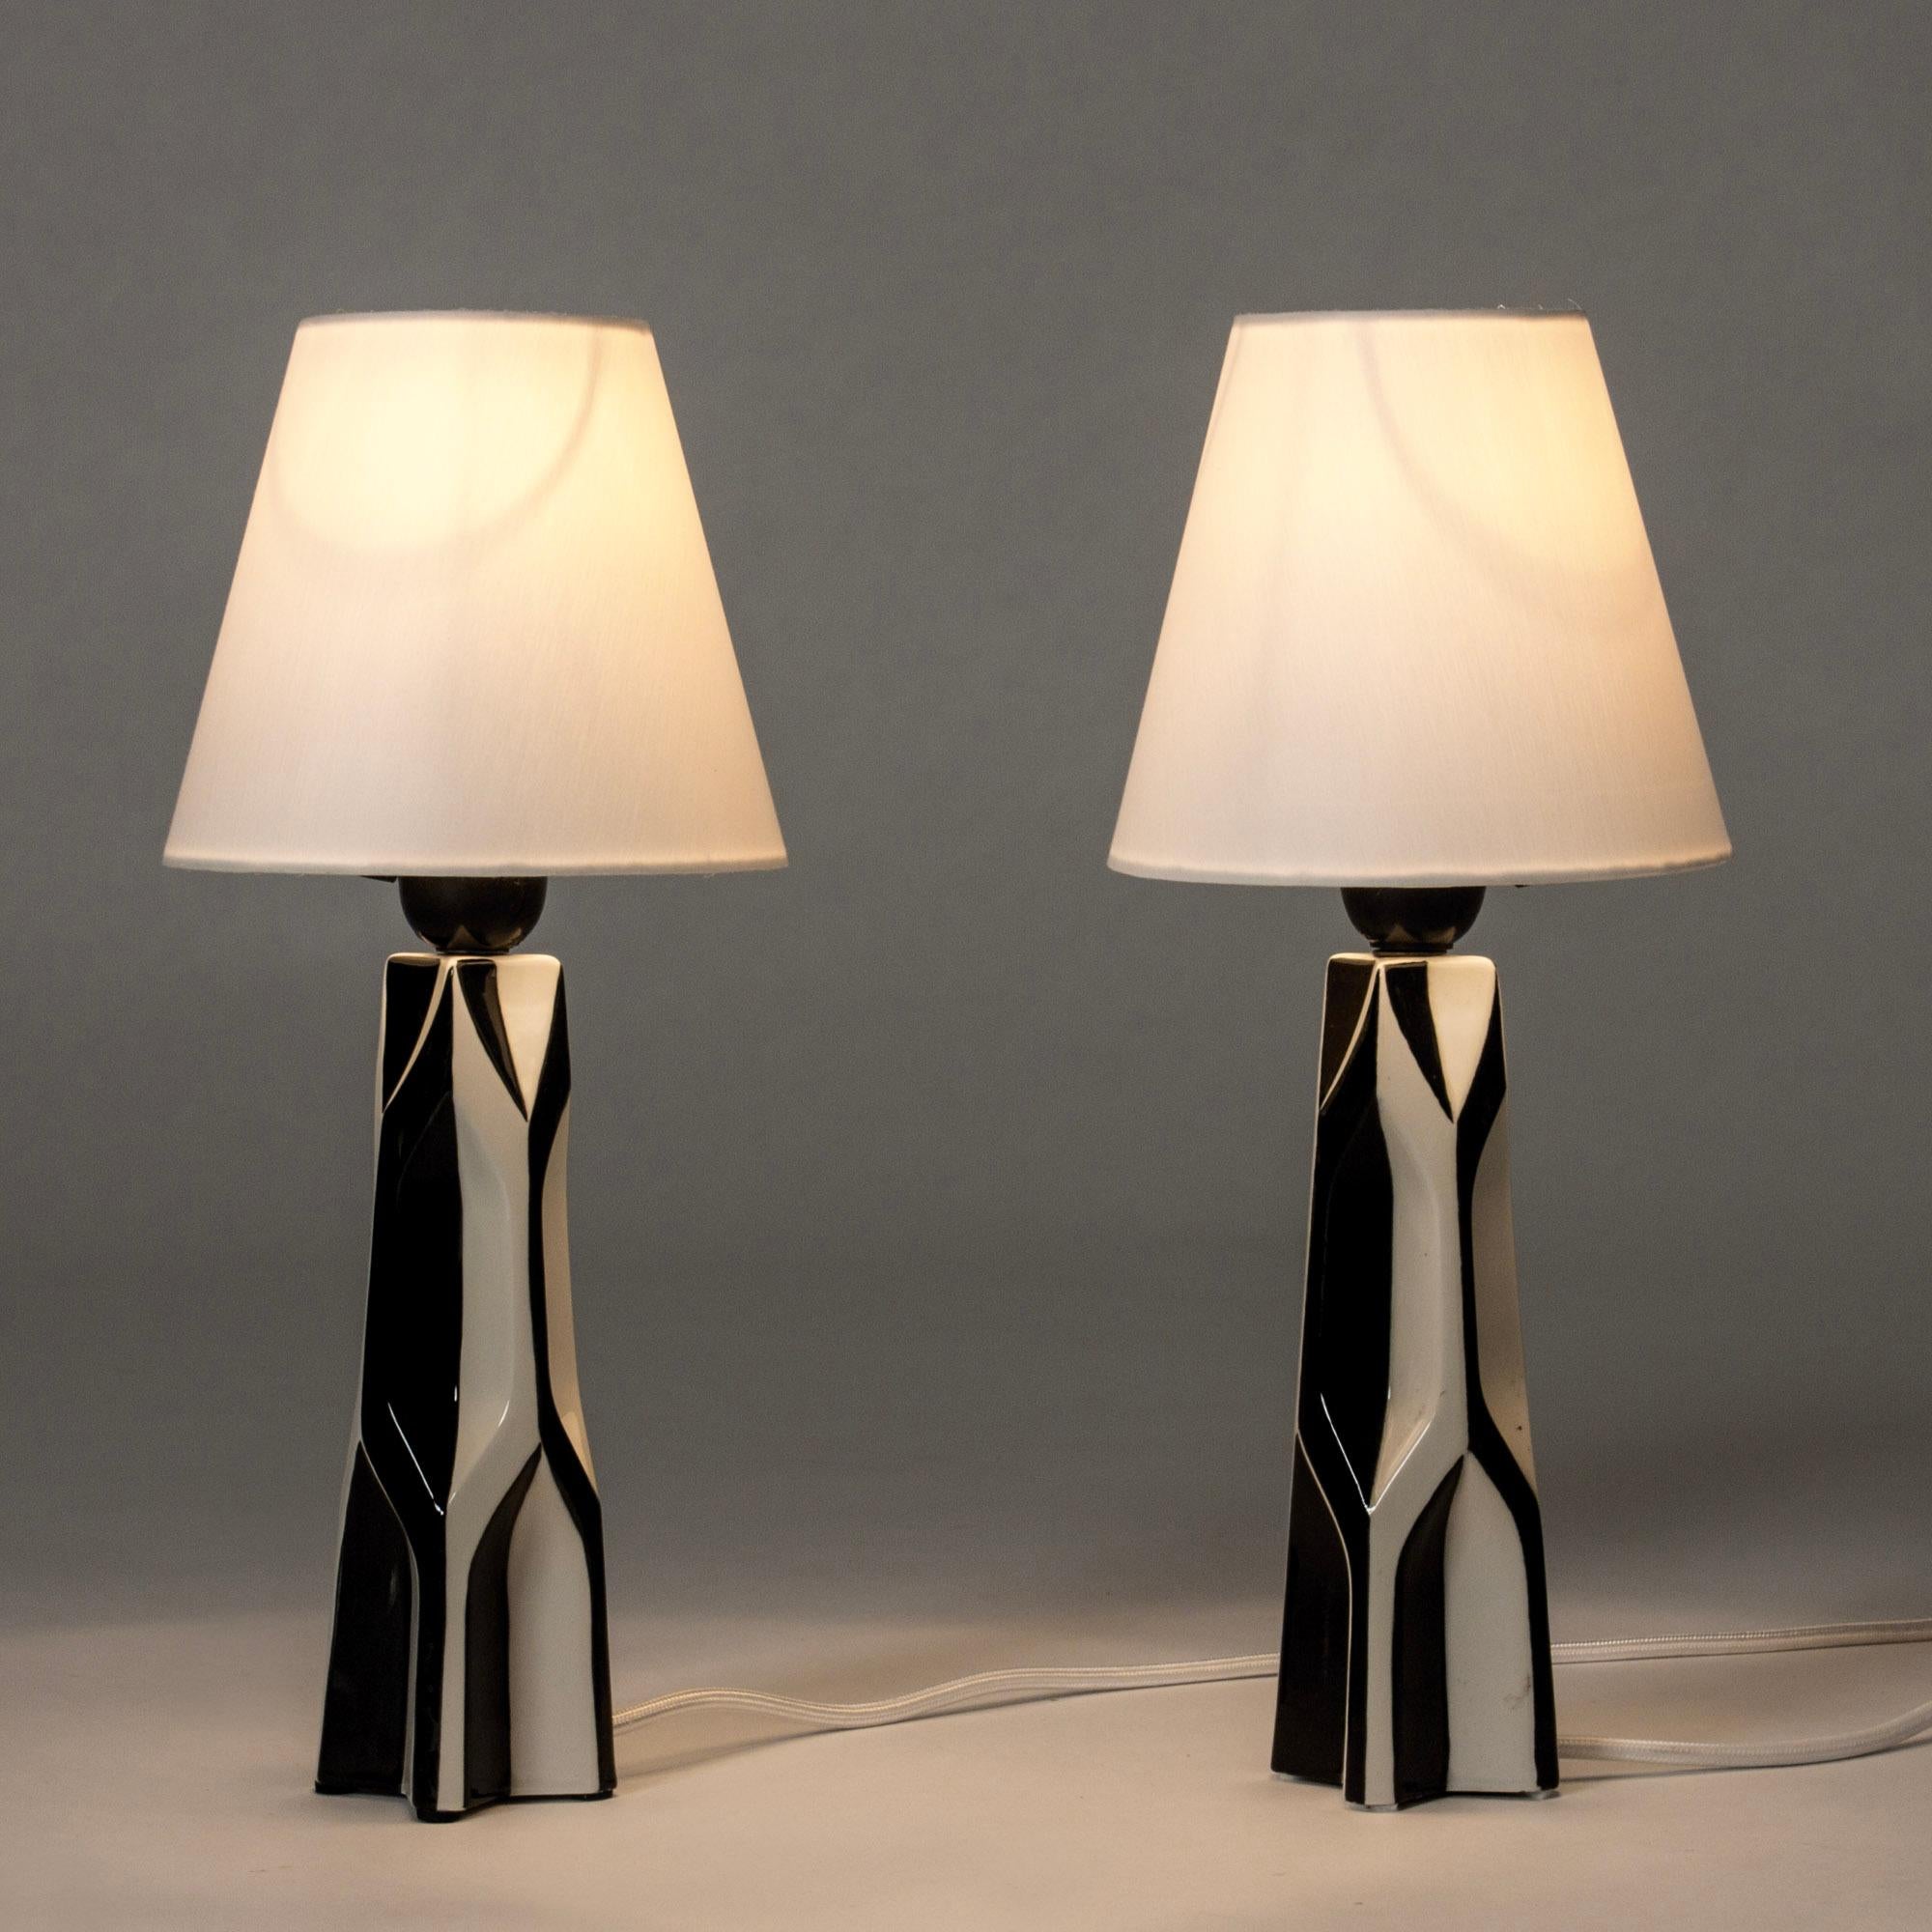 Auffälliges Paar Steingut-Tischlampen von Carl-Harry Stålhane. Skulpturales Design mit grafischem Schwarz-Weiß-Dekor.

Carl-Harry Stålhane war in den 1950er, 1960er und 1970er Jahren einer der Stars unter den schwedischen Keramikkünstlern, dessen